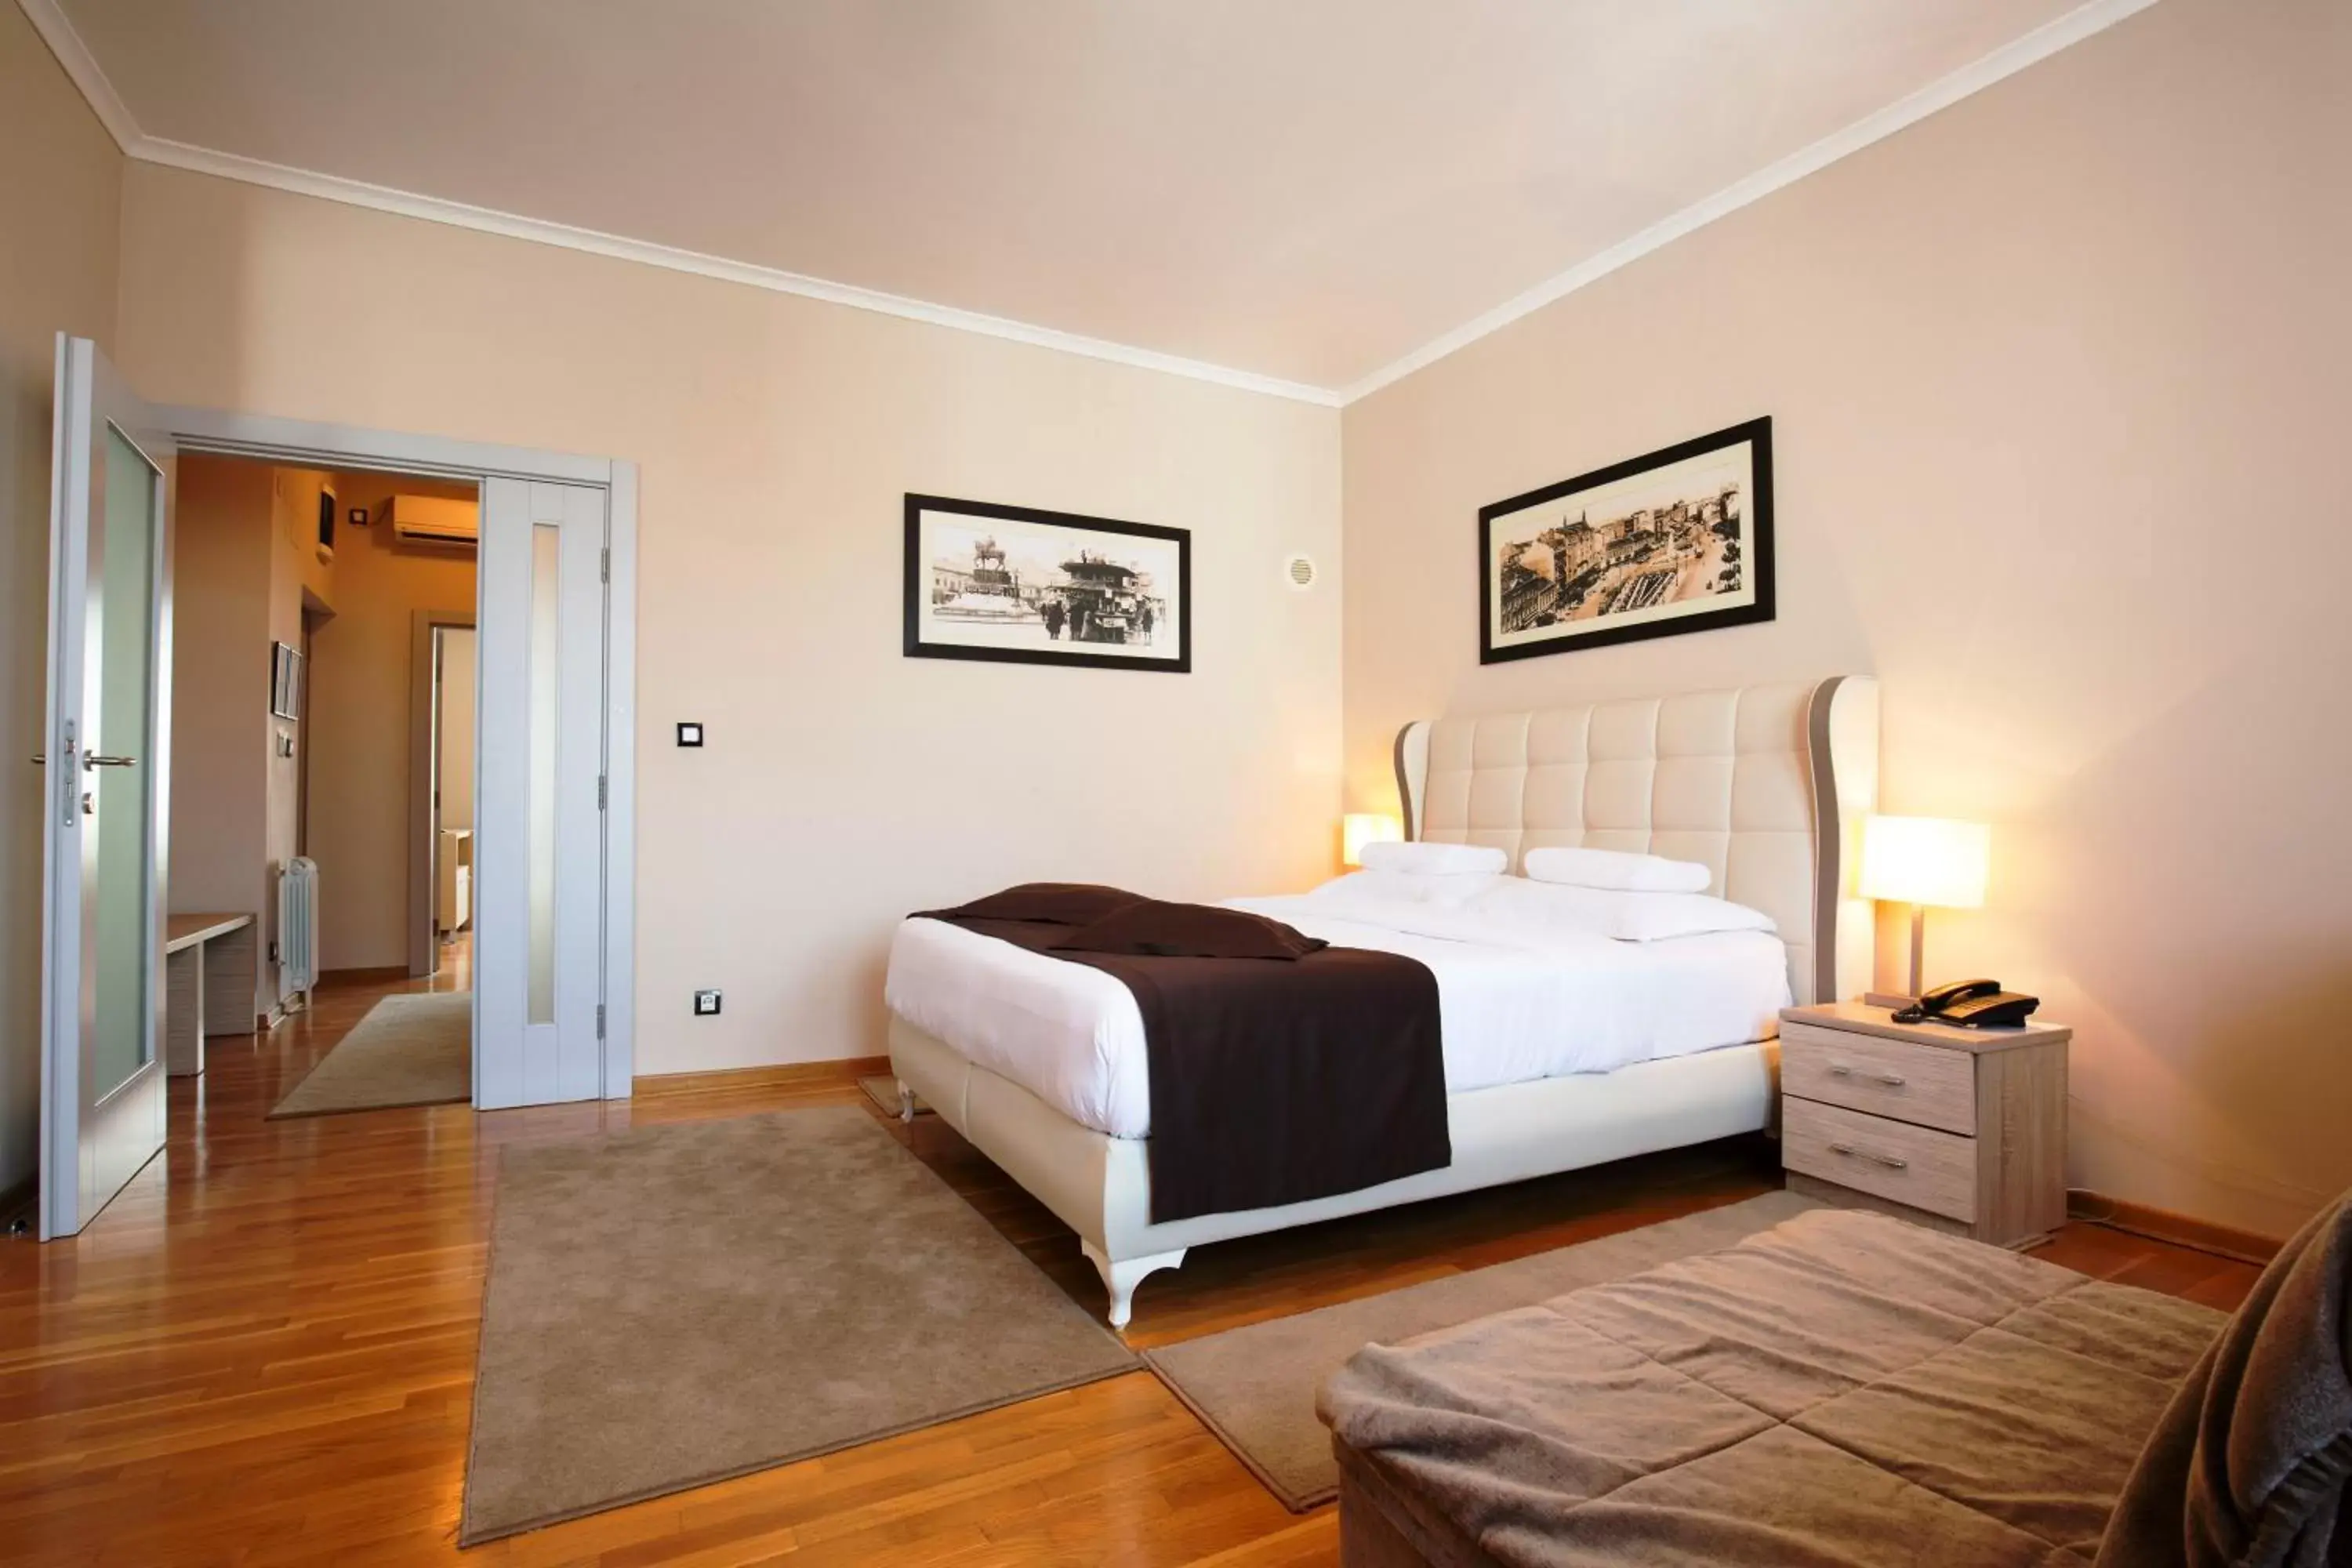 Bedroom, Room Photo in Garni Hotel Nevski